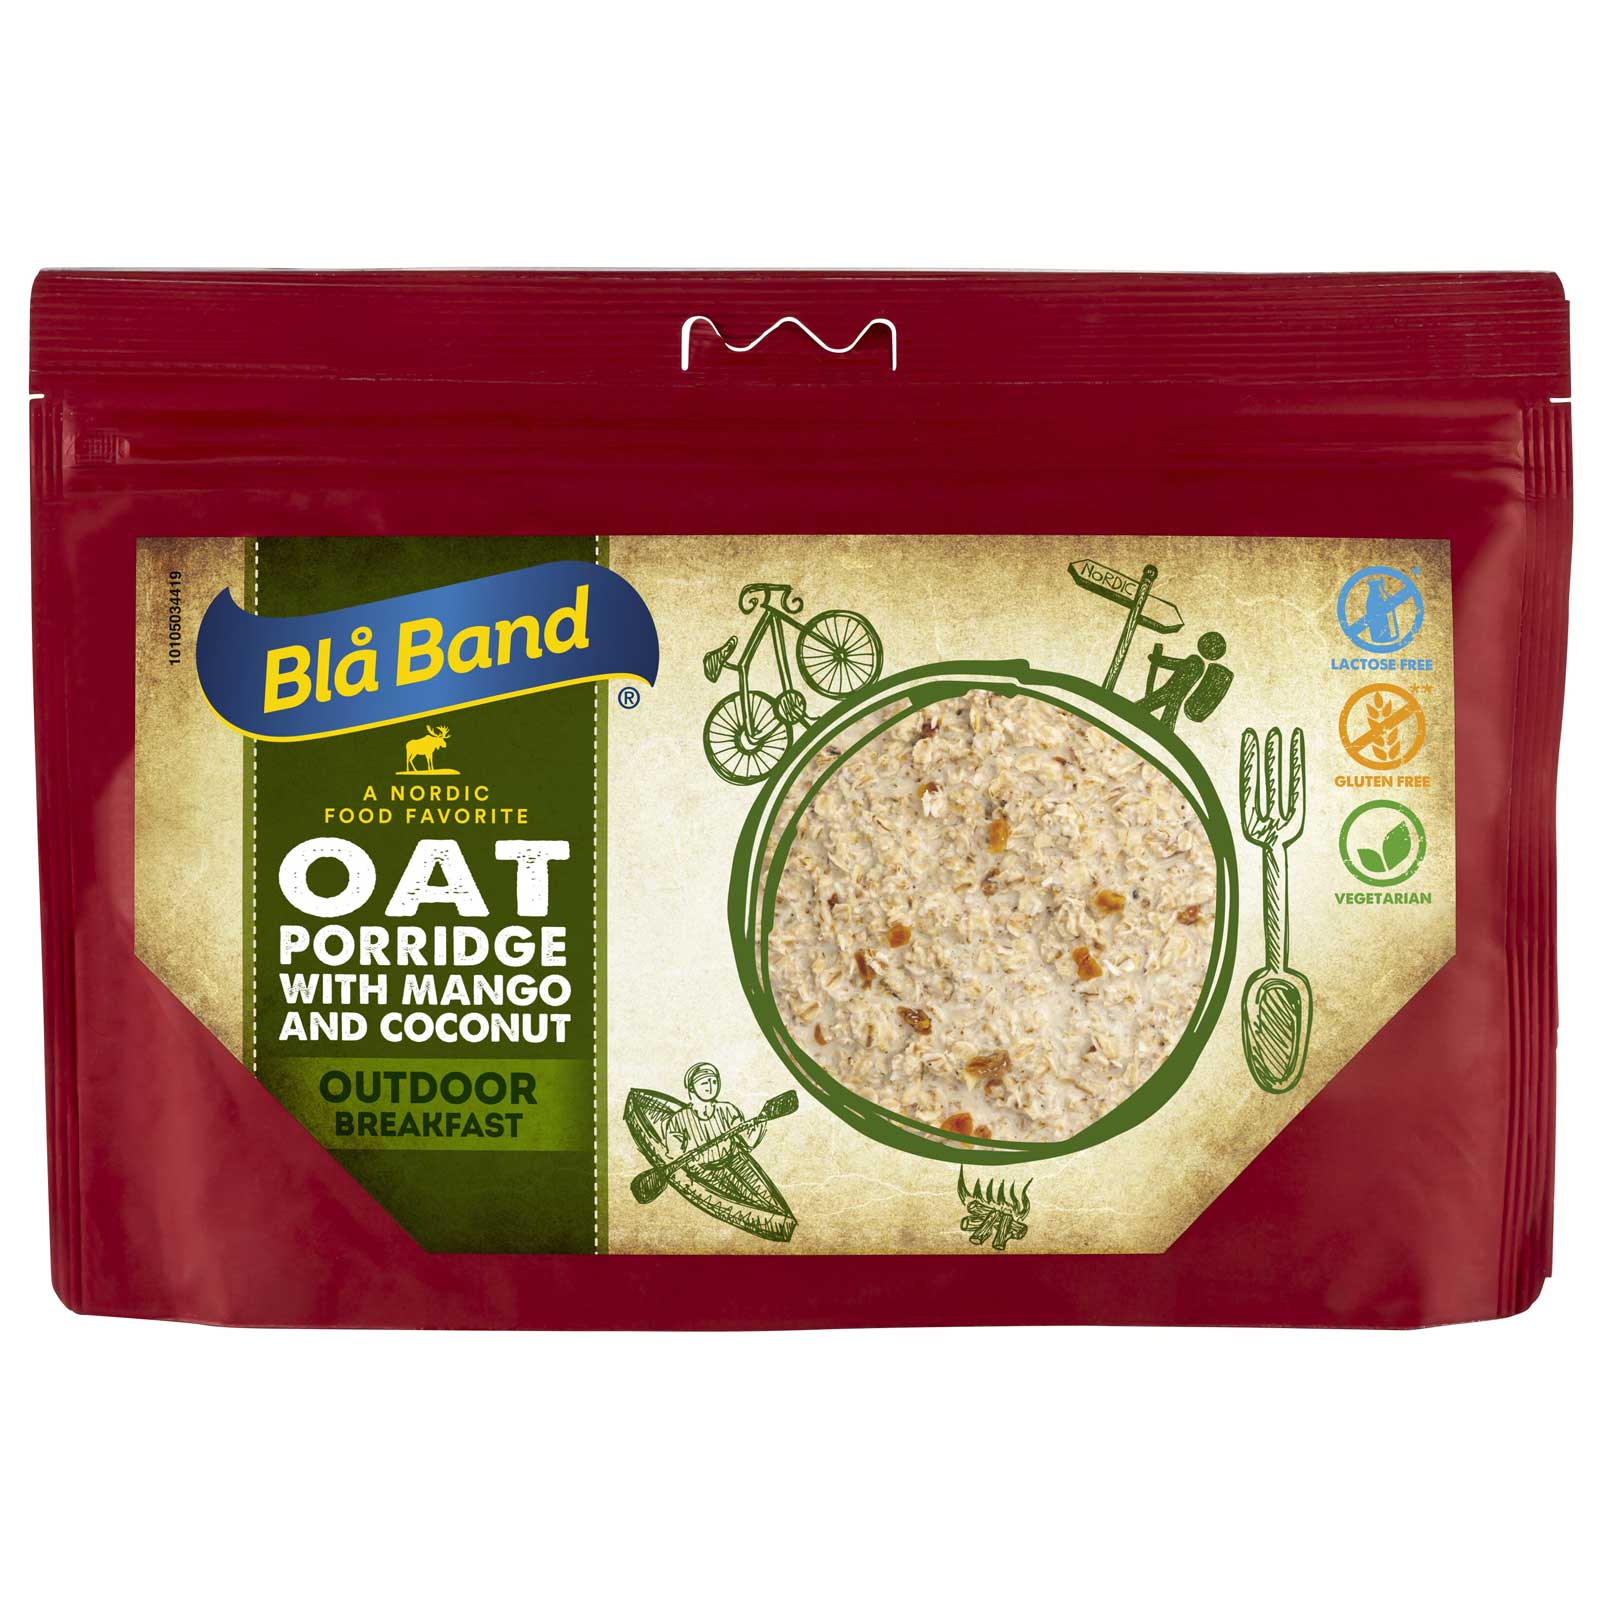 Productfoto van Blå Band Patat met Kokos en Mango - Outdoor Ontbijt - 150g